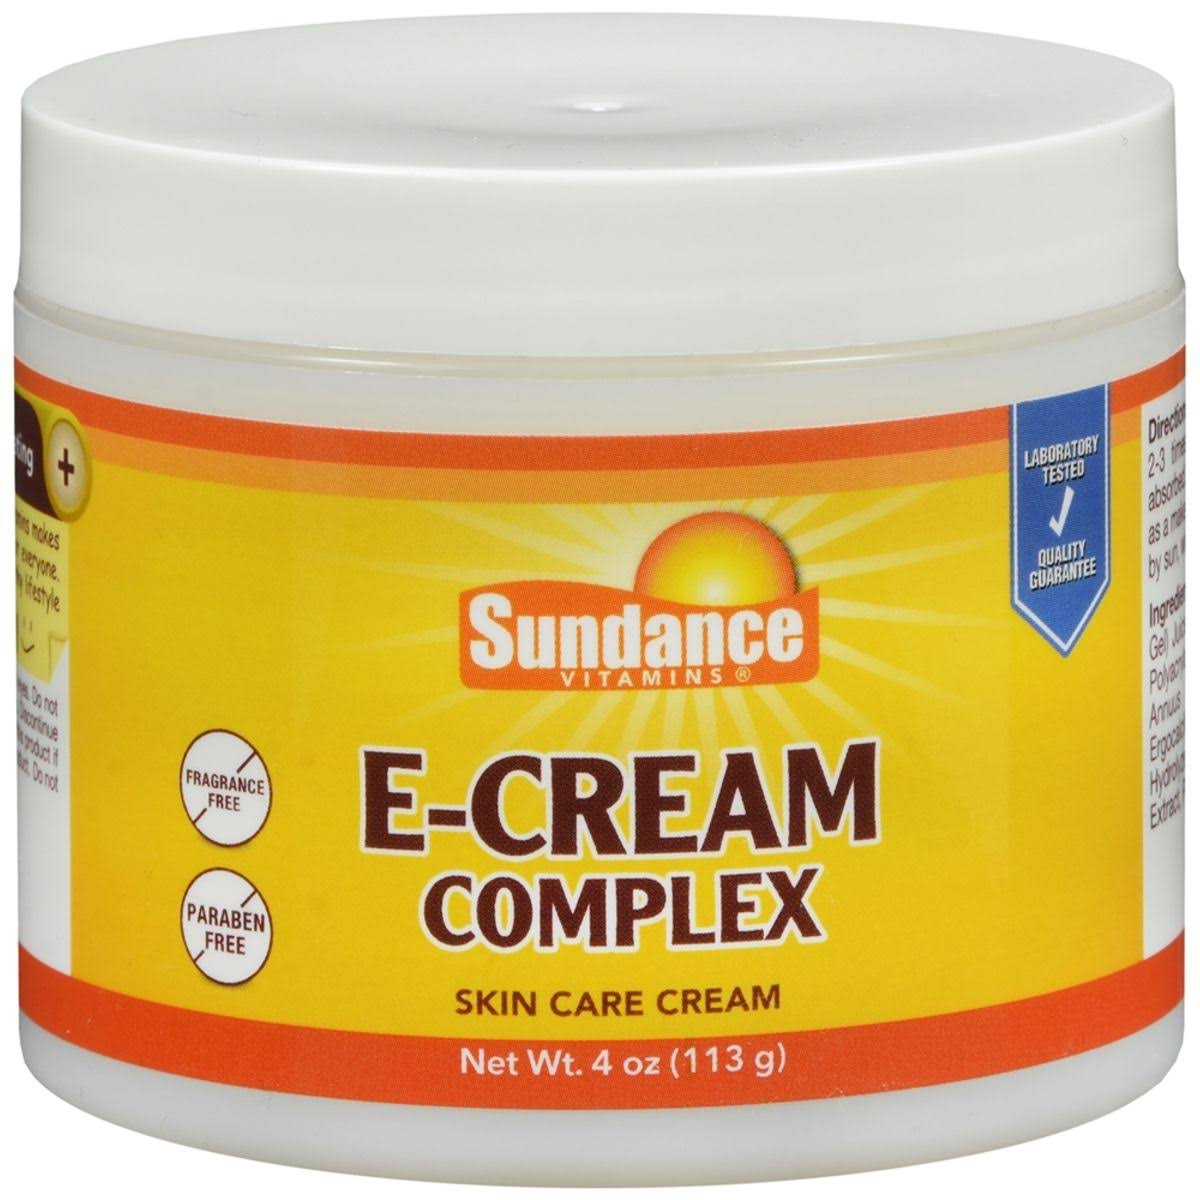 Sundance Vitamins E-Cream Complex Skin Care Cream - 4 oz